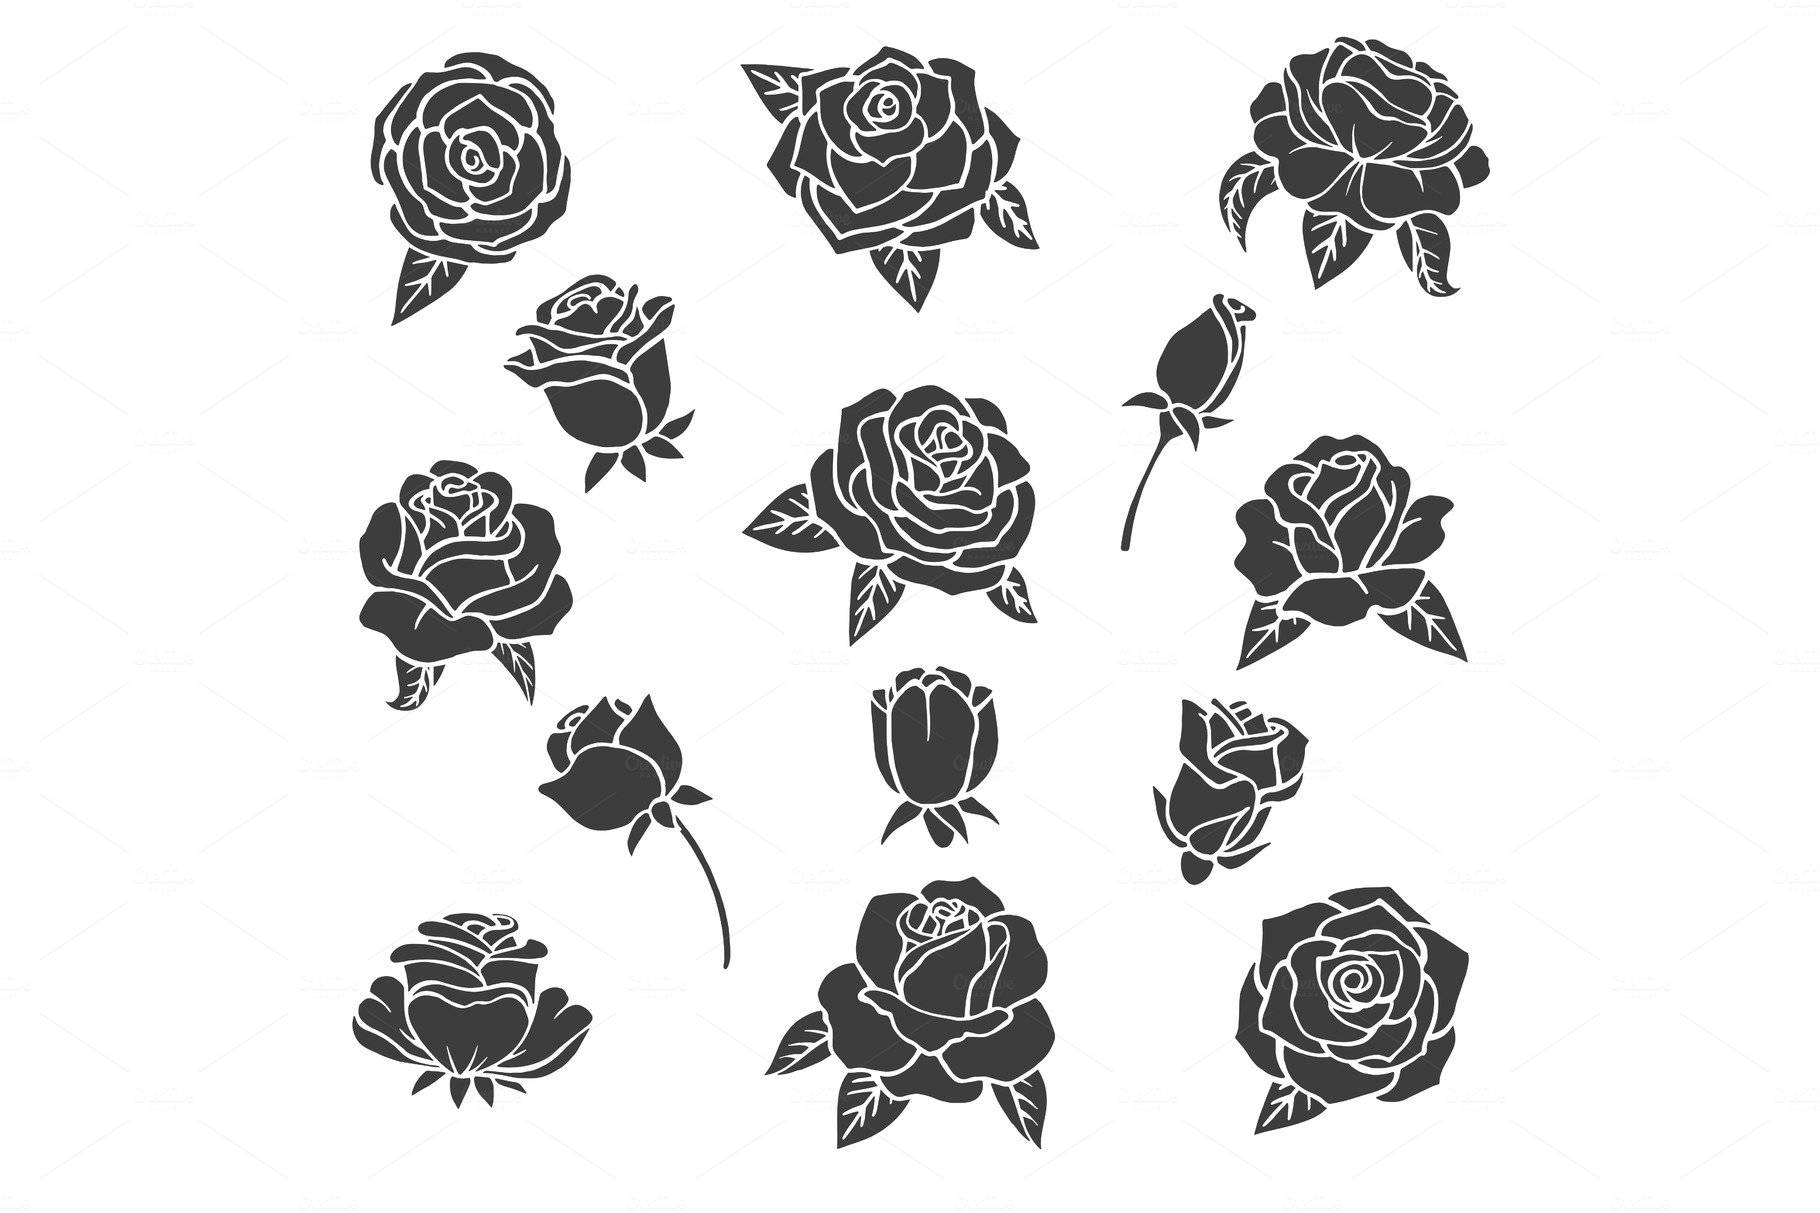 Multiple Black Roses Art Wallpaper